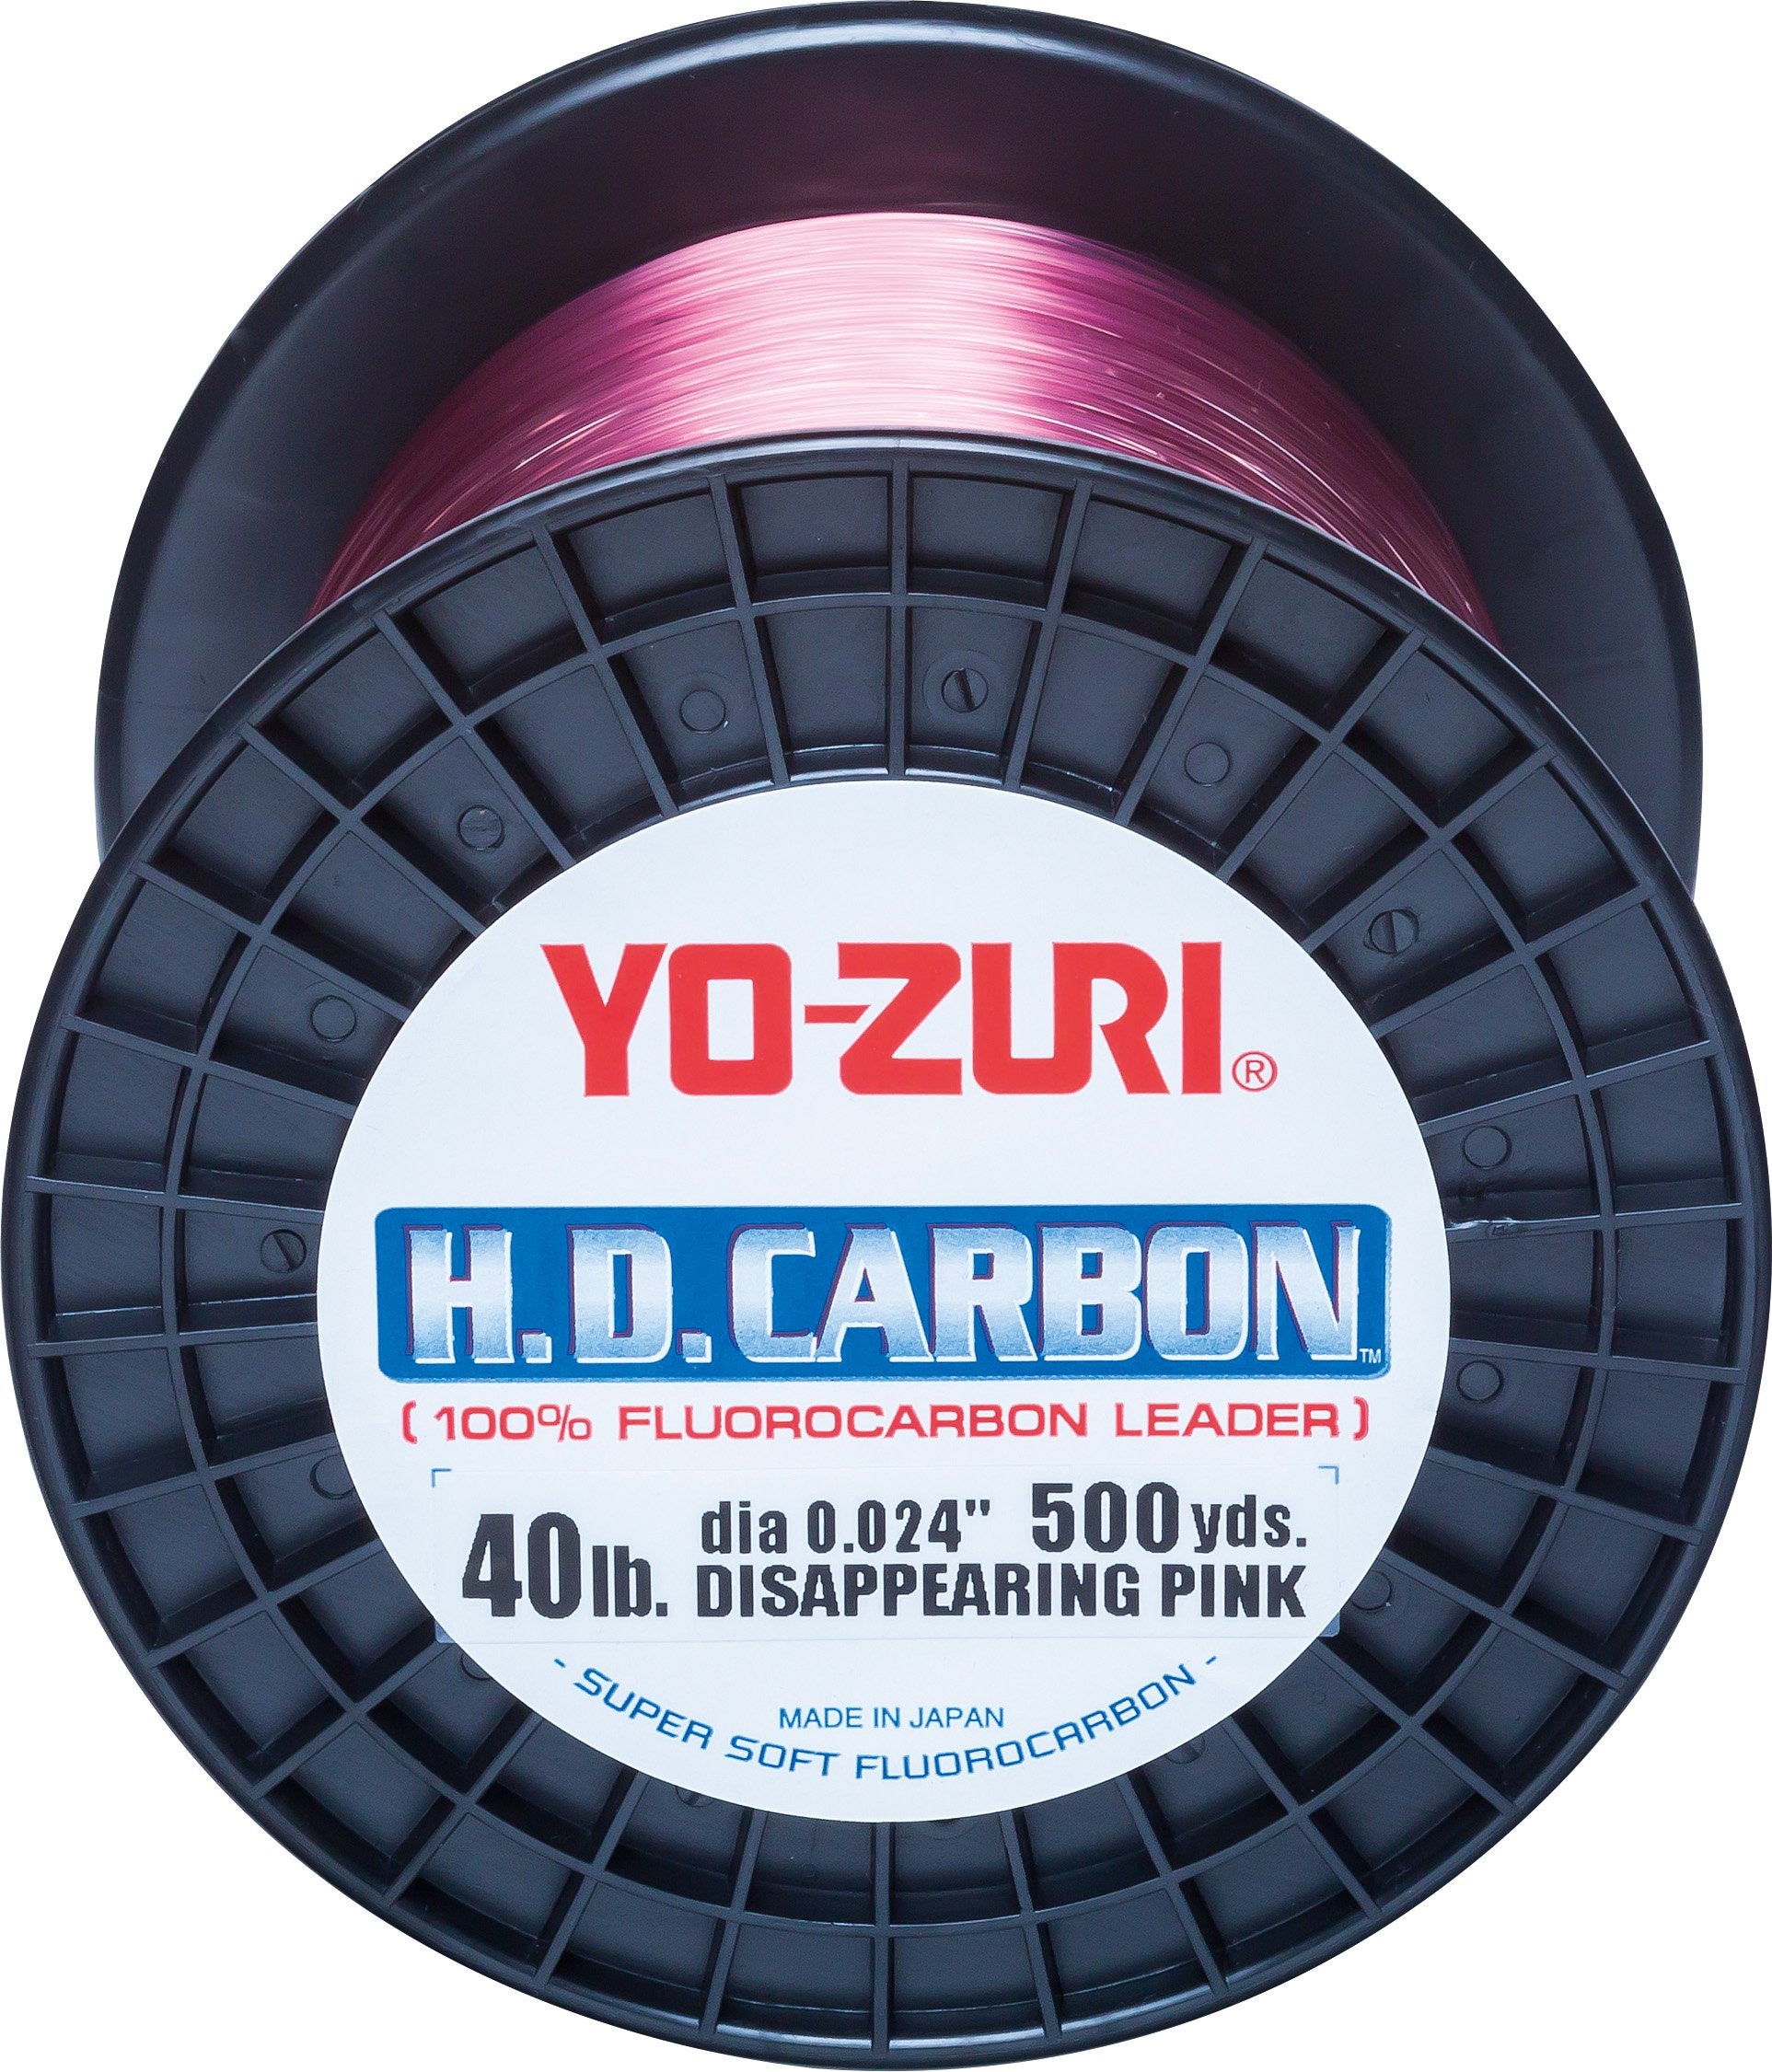 Yo-Zuri Fluorocarbon HD CARBON Natural